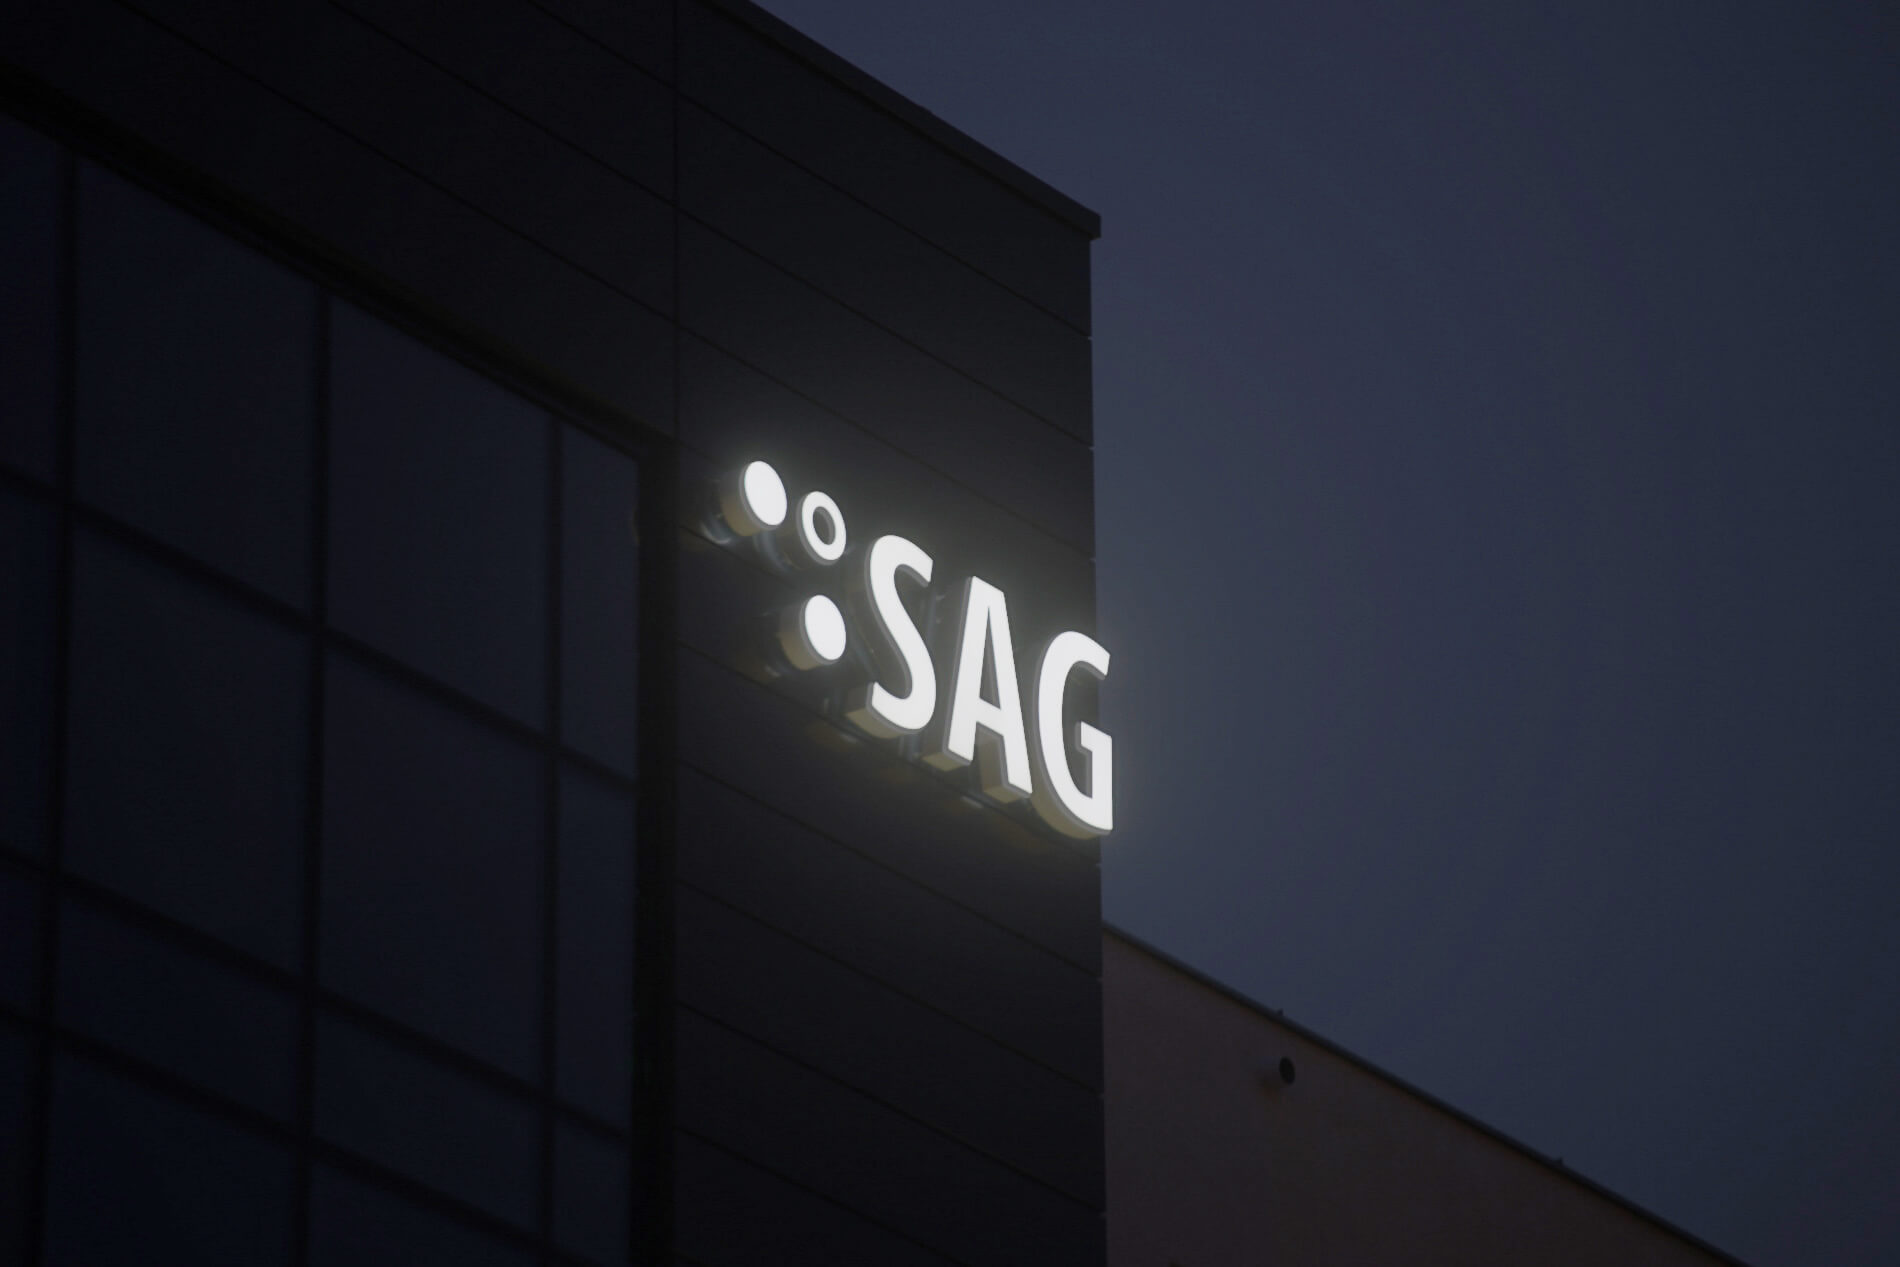 SAG - SAG  - świetlne litery przestrzenne montowane na dystansach